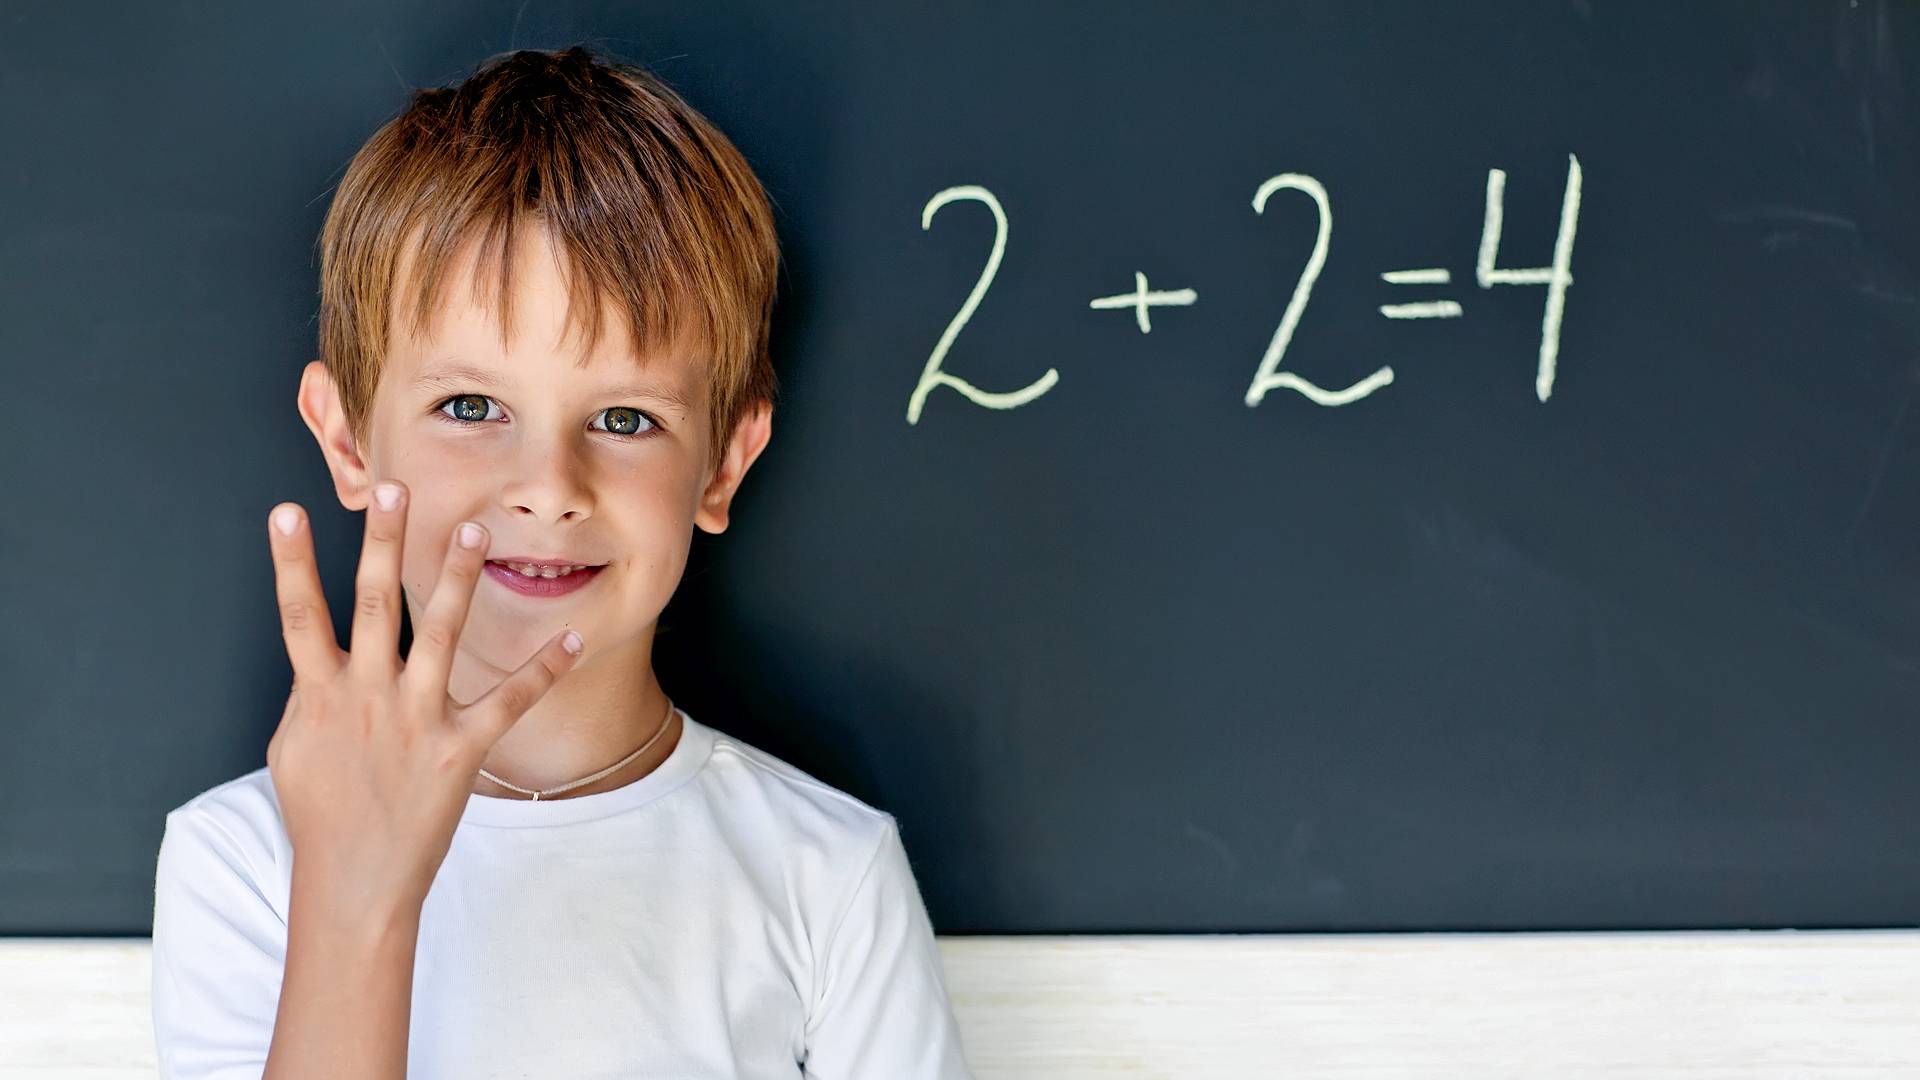 Помочь решить по фотографии. Математика для детей. Школьник математика. Дети на математике. Ребенок решает задачу.